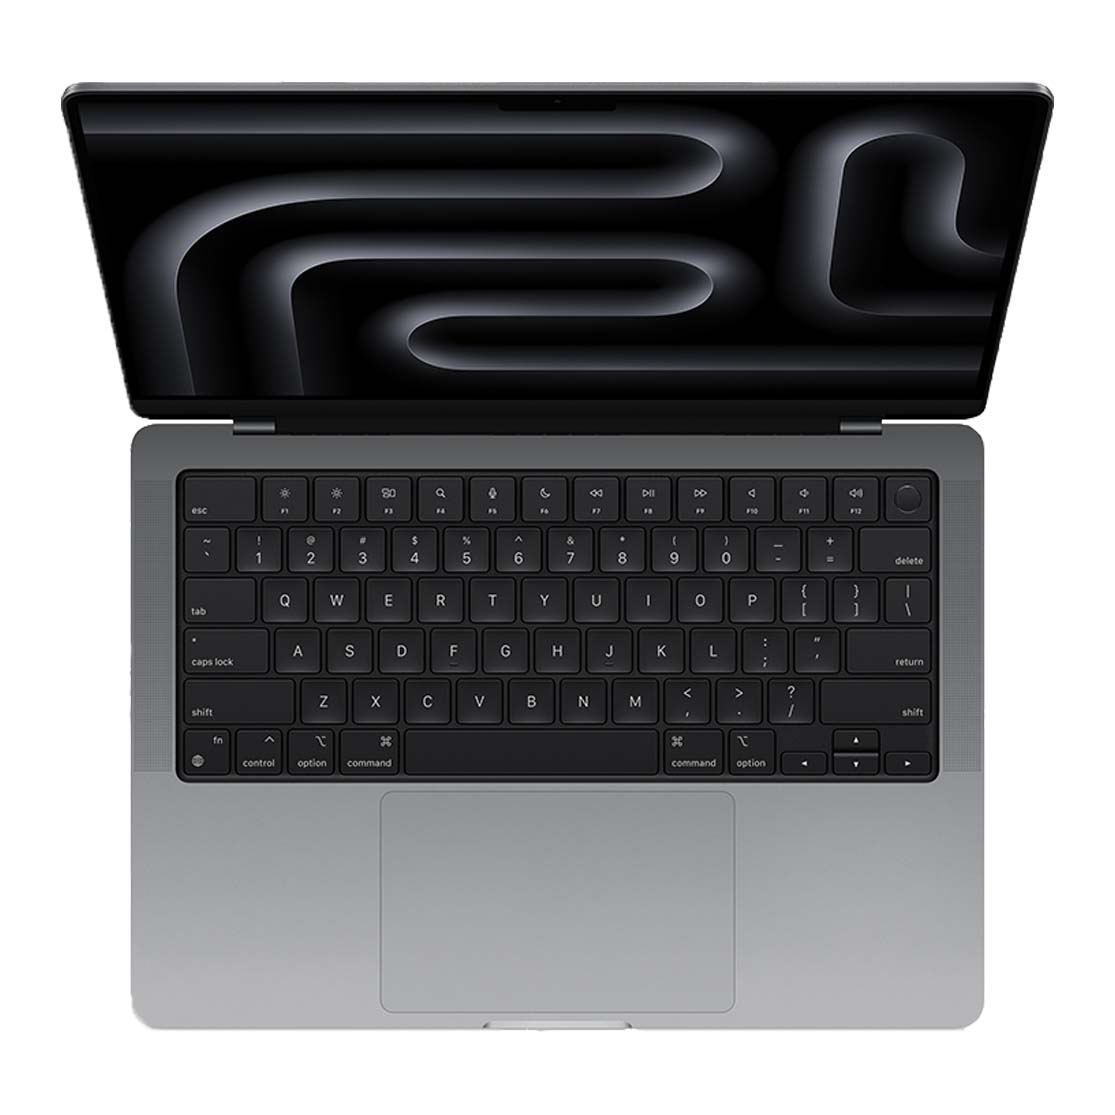 M3 MacBook: Sleek, seamless typing